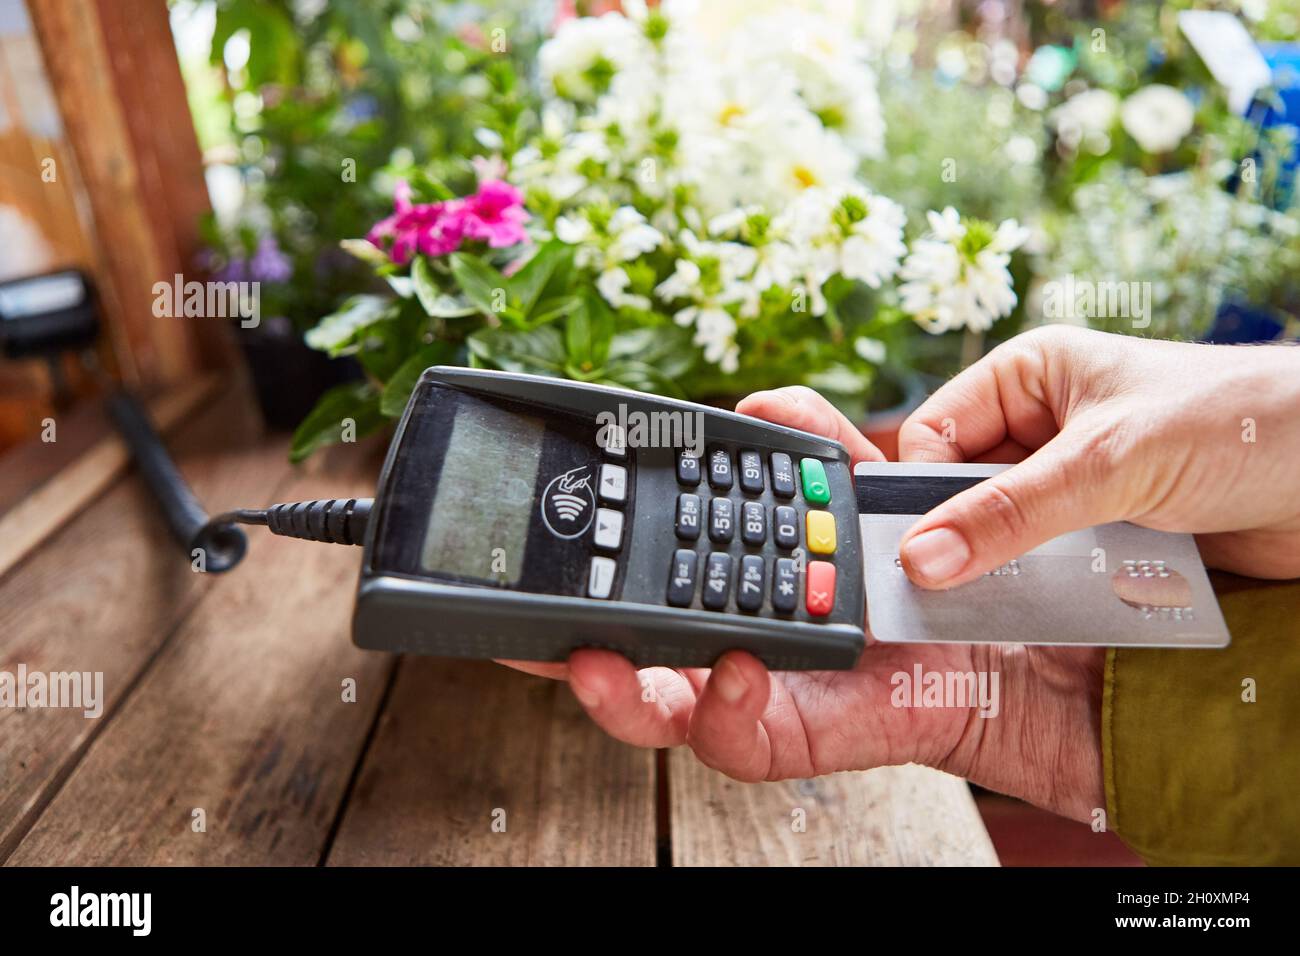 Le client paie sans argent avec sa carte de crédit à la caisse du fleuriste ou de la boutique Banque D'Images